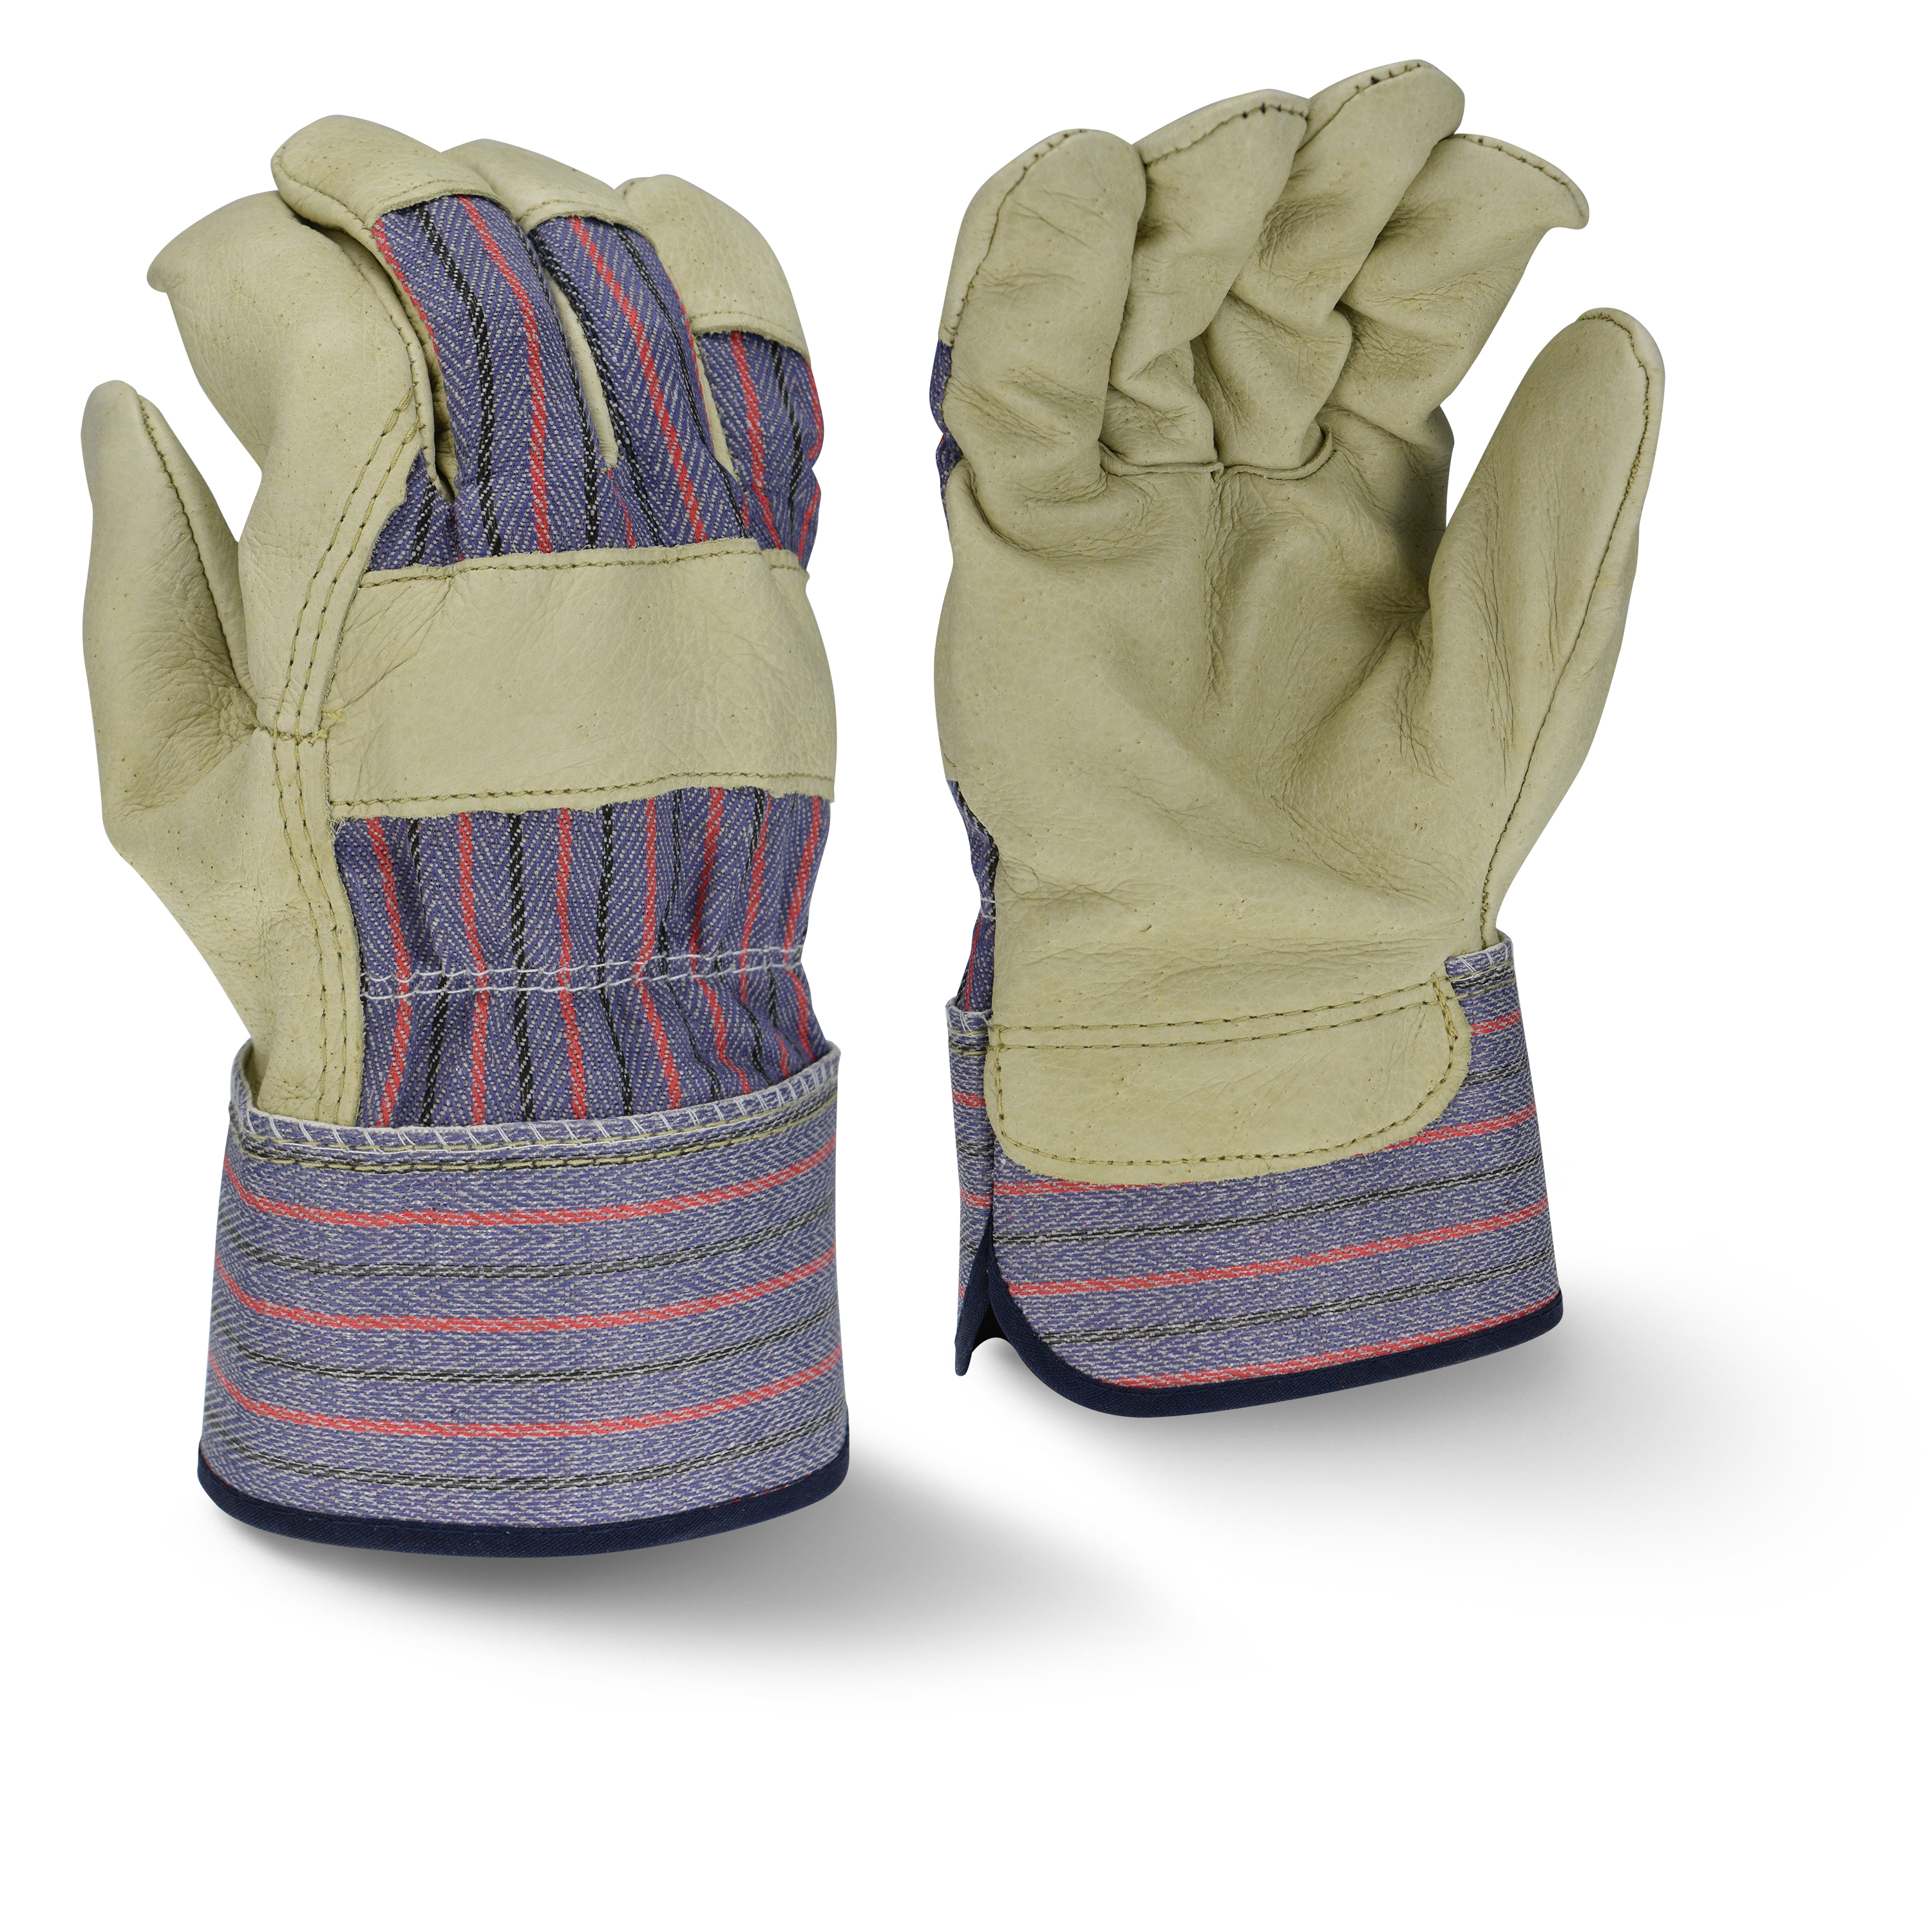 Bellingham C3840 Premium Grain Pigskin Leather Glove